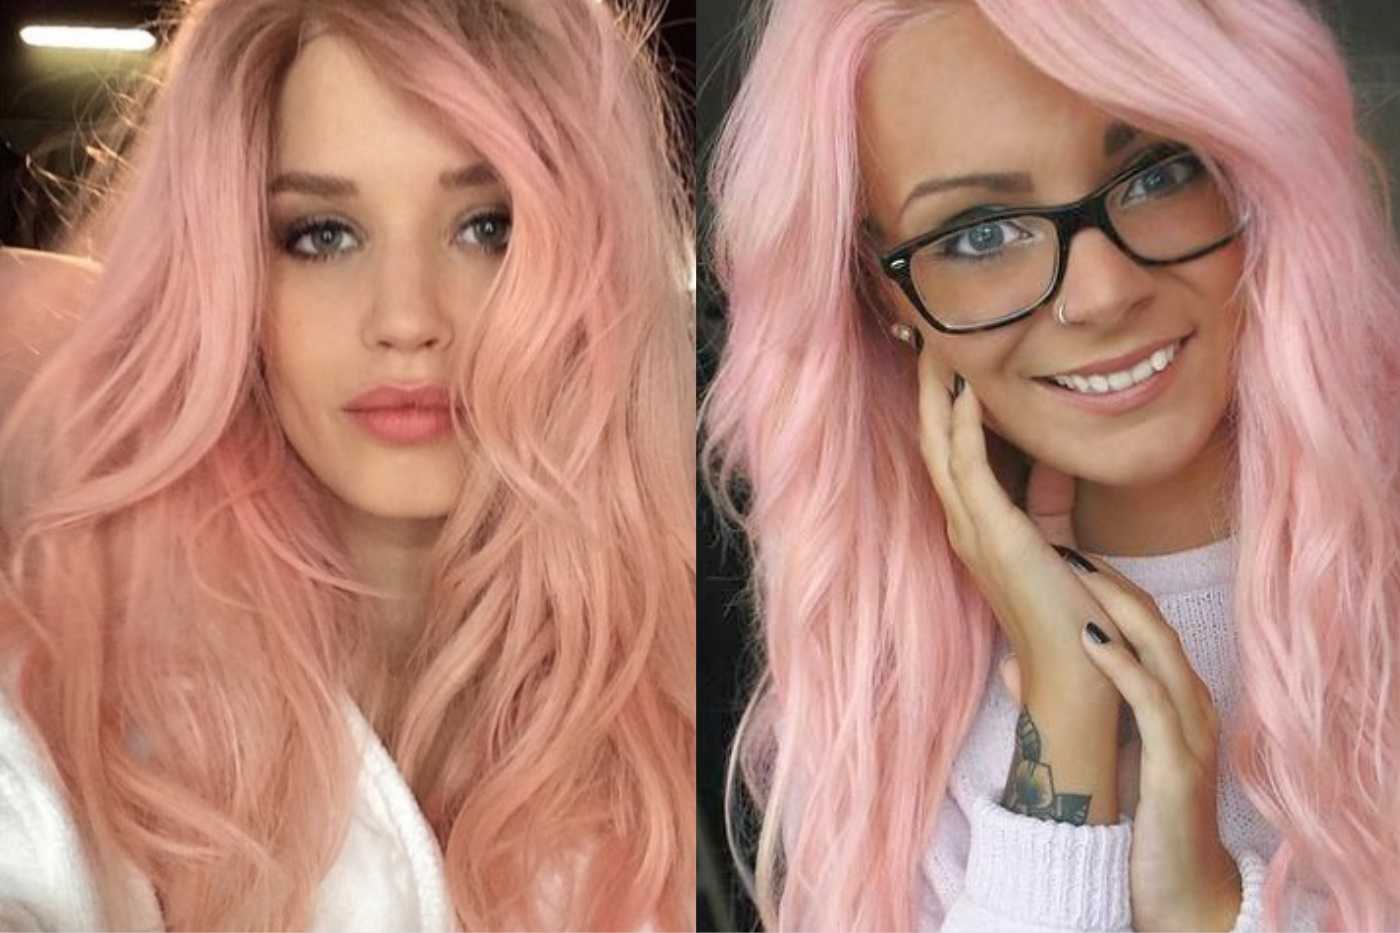 Розовые волосы: 50 лучших вариантов окрашивания 2021